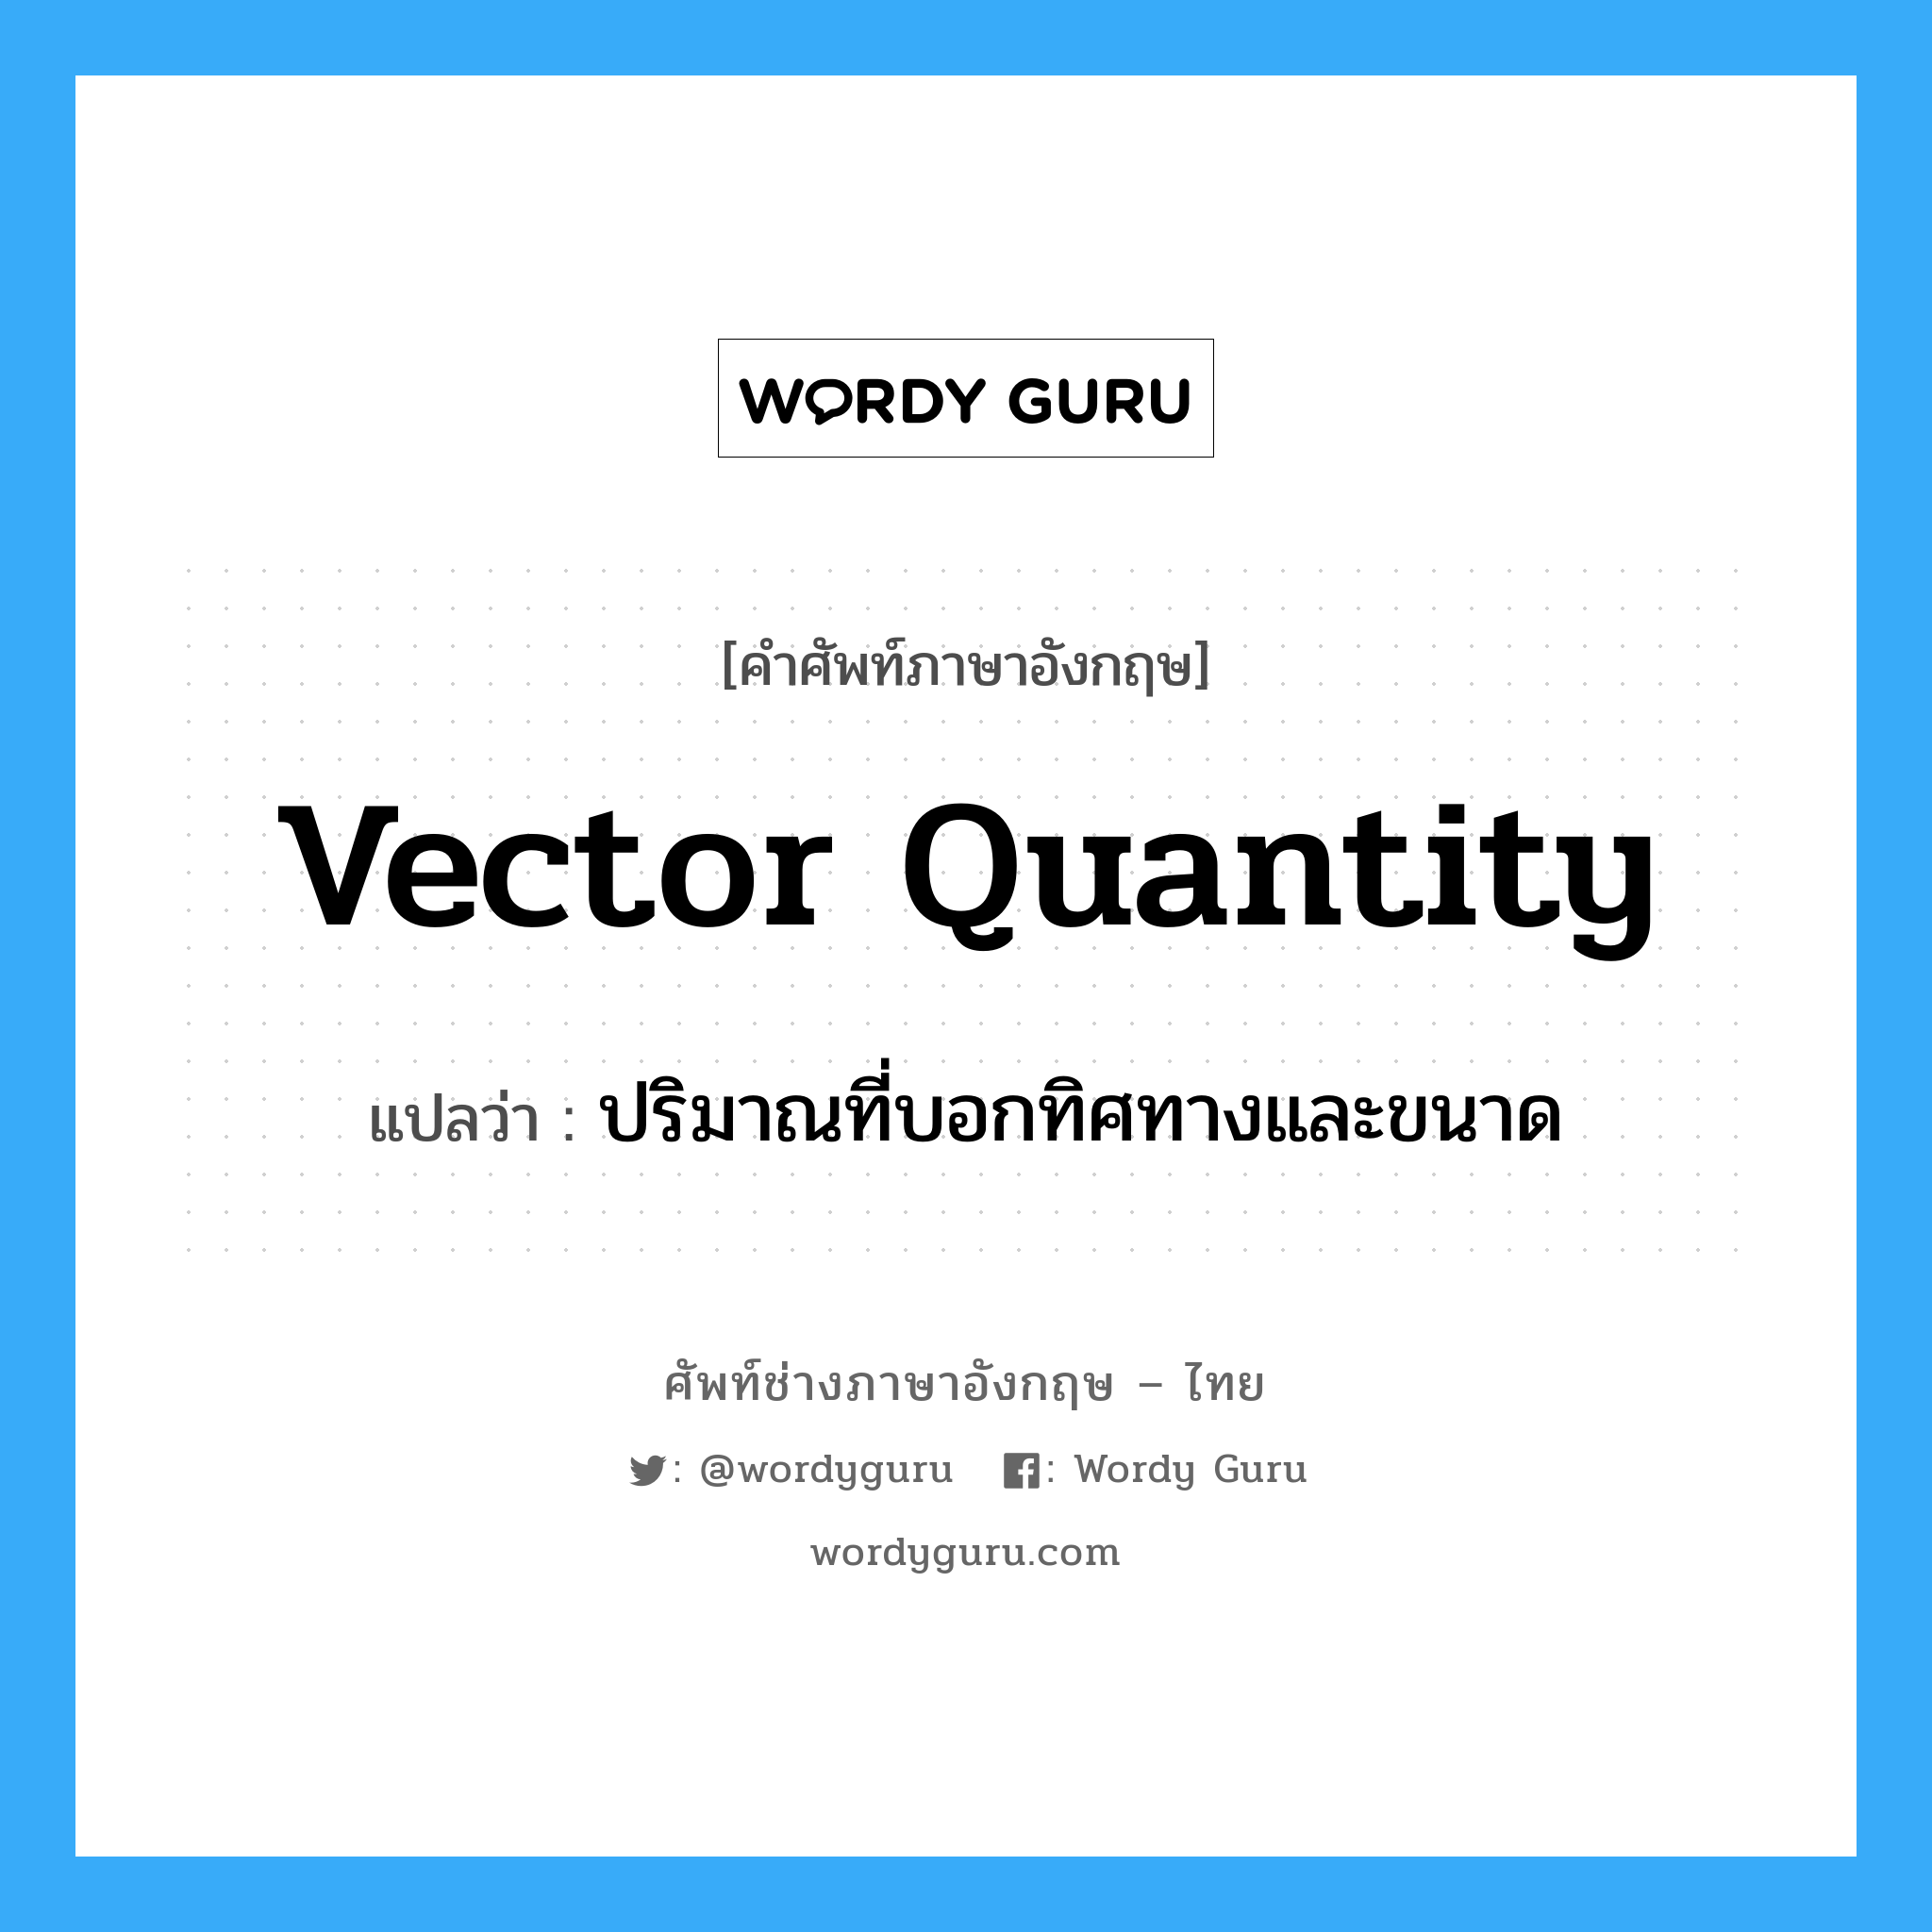 vector quantity แปลว่า?, คำศัพท์ช่างภาษาอังกฤษ - ไทย vector quantity คำศัพท์ภาษาอังกฤษ vector quantity แปลว่า ปริมาณที่บอกทิศทางและขนาด